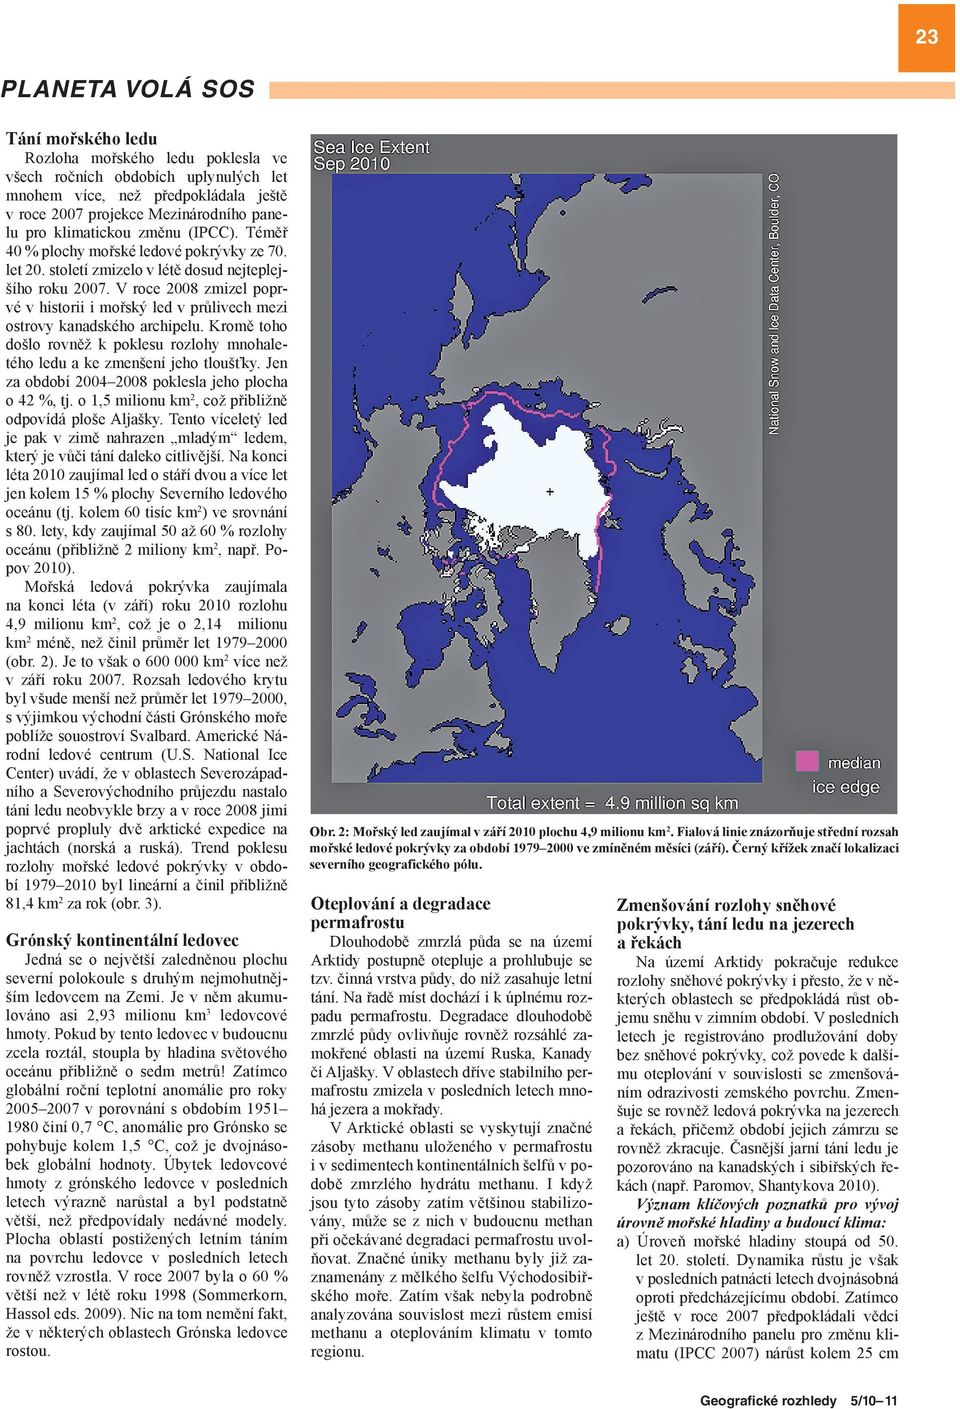 V roce 2008 zmizel poprvé v historii i mořský led v průlivech mezi ostrovy kanadského archipelu. Kromě toho došlo rovněž k poklesu rozlohy mnohaletého ledu a ke zmenšení jeho tloušťky.